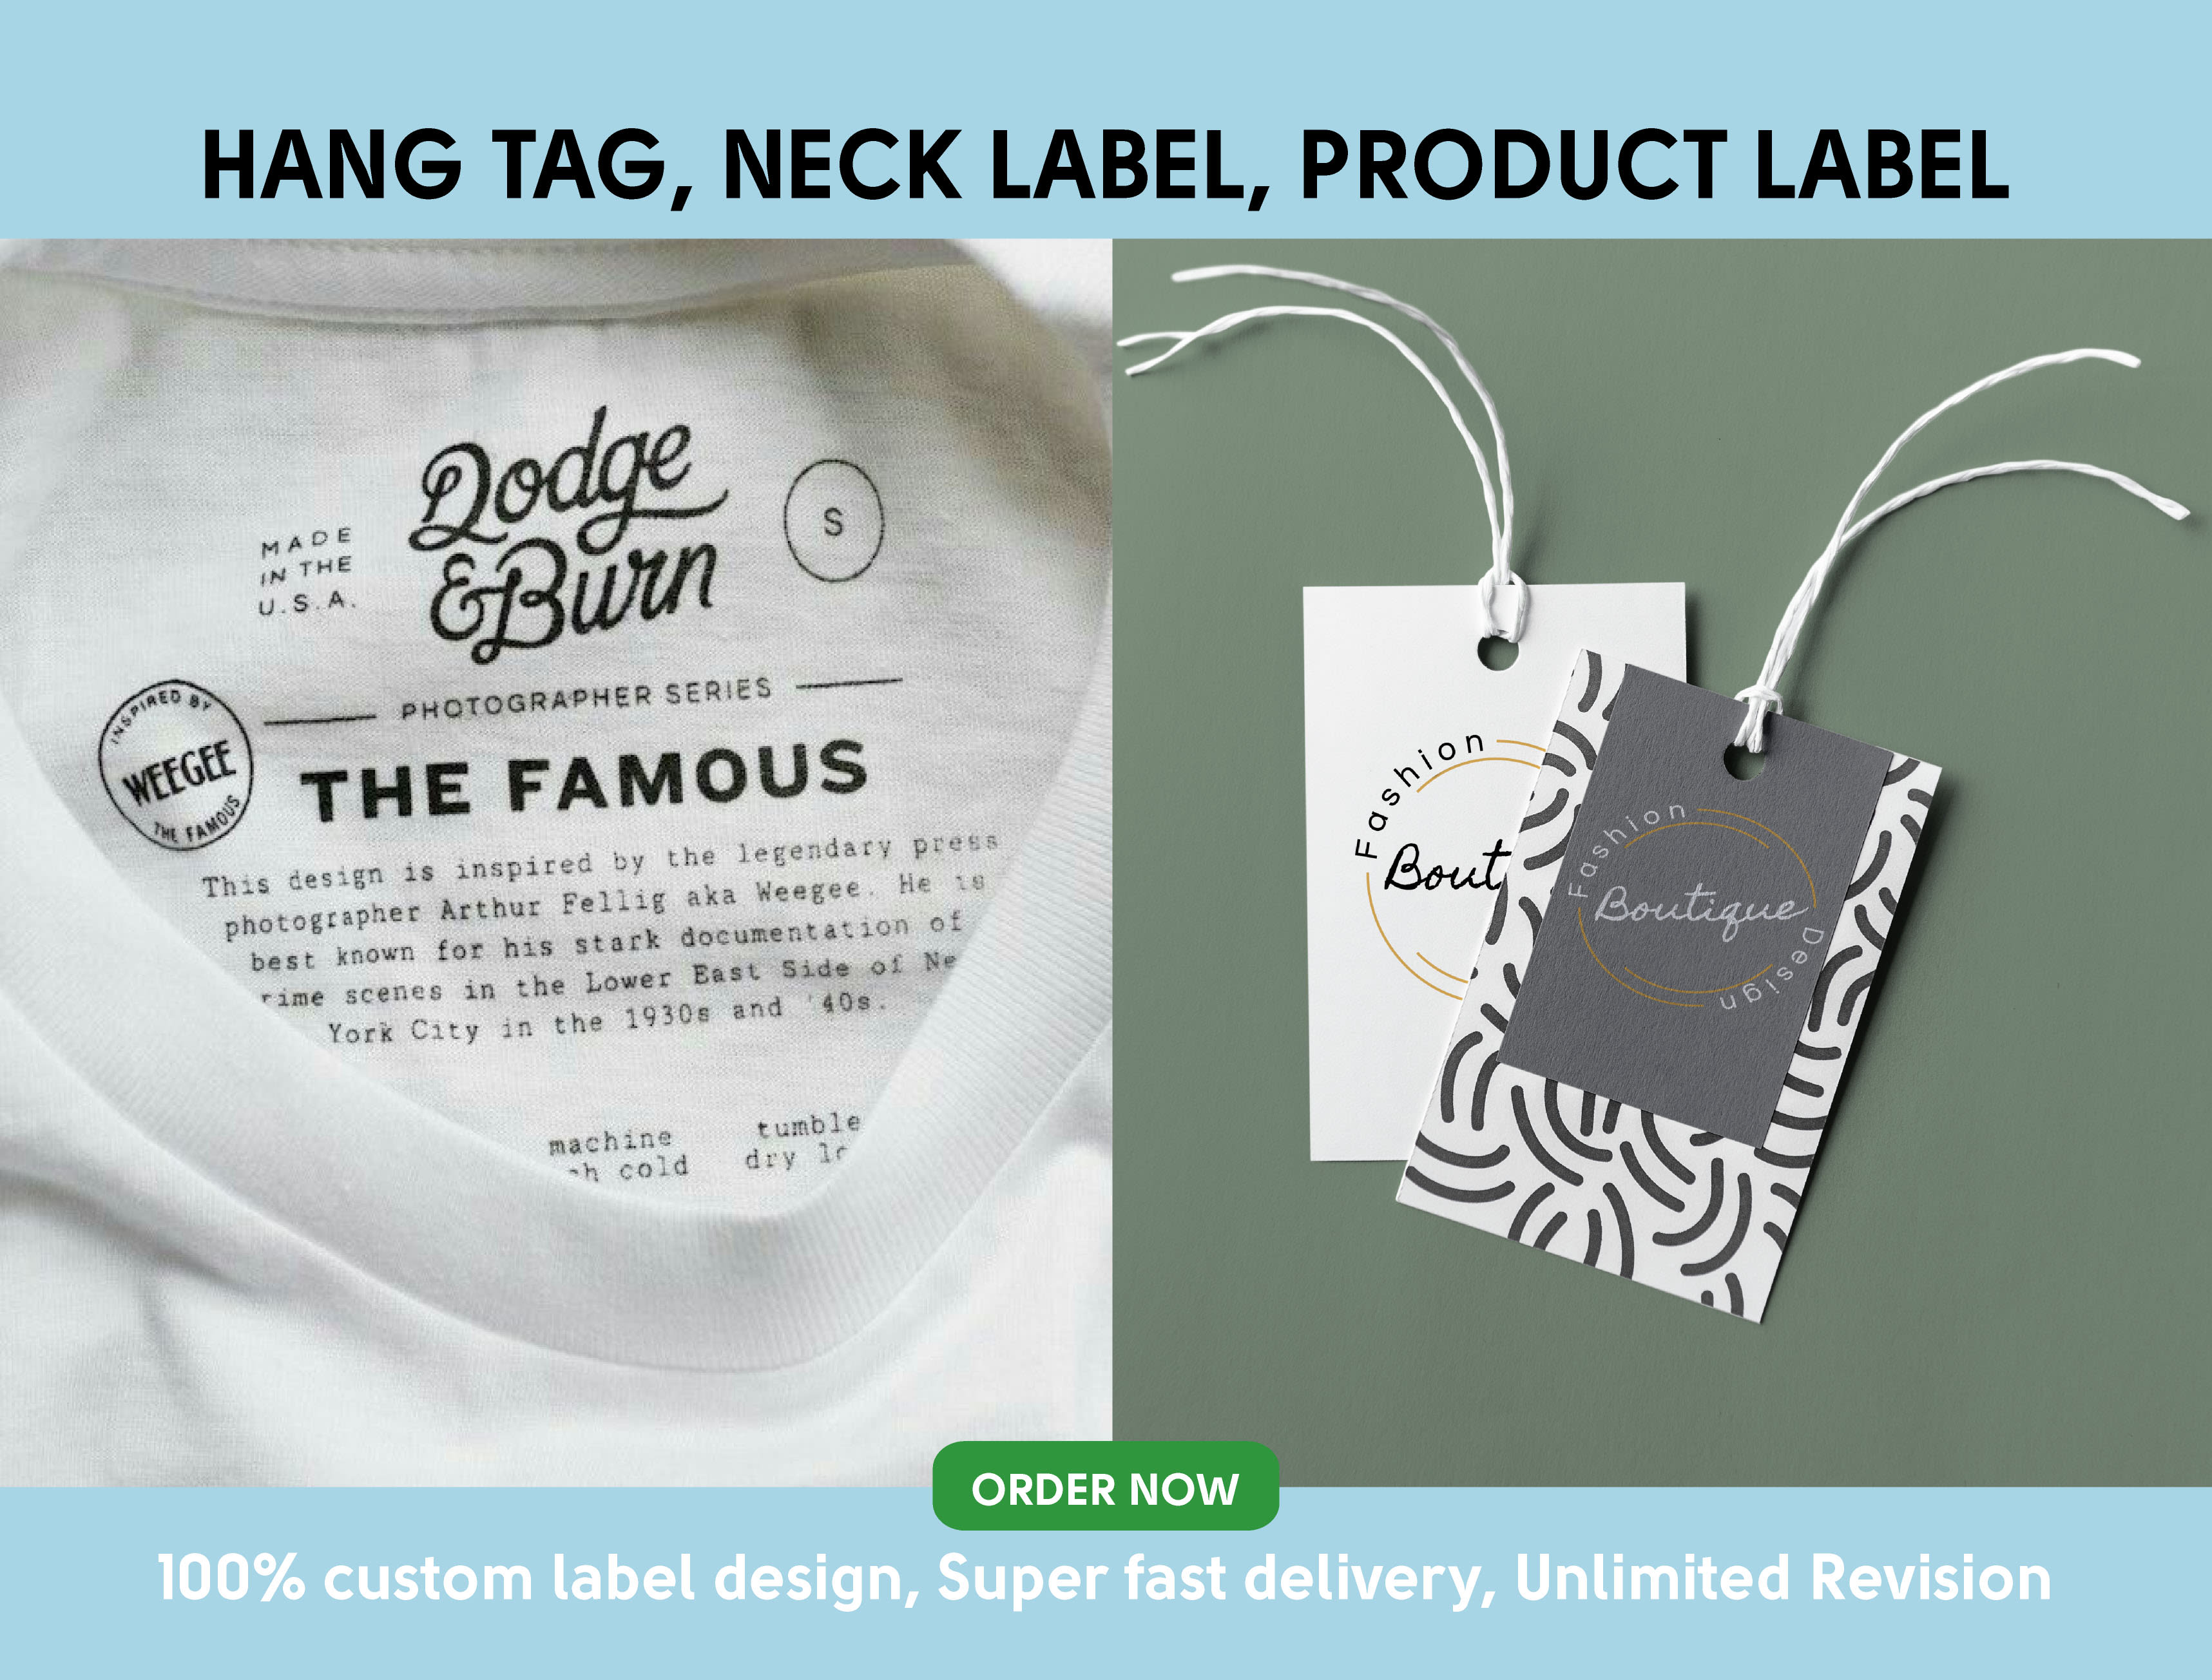 Clothing labels design, Hang tag design, Hang tags